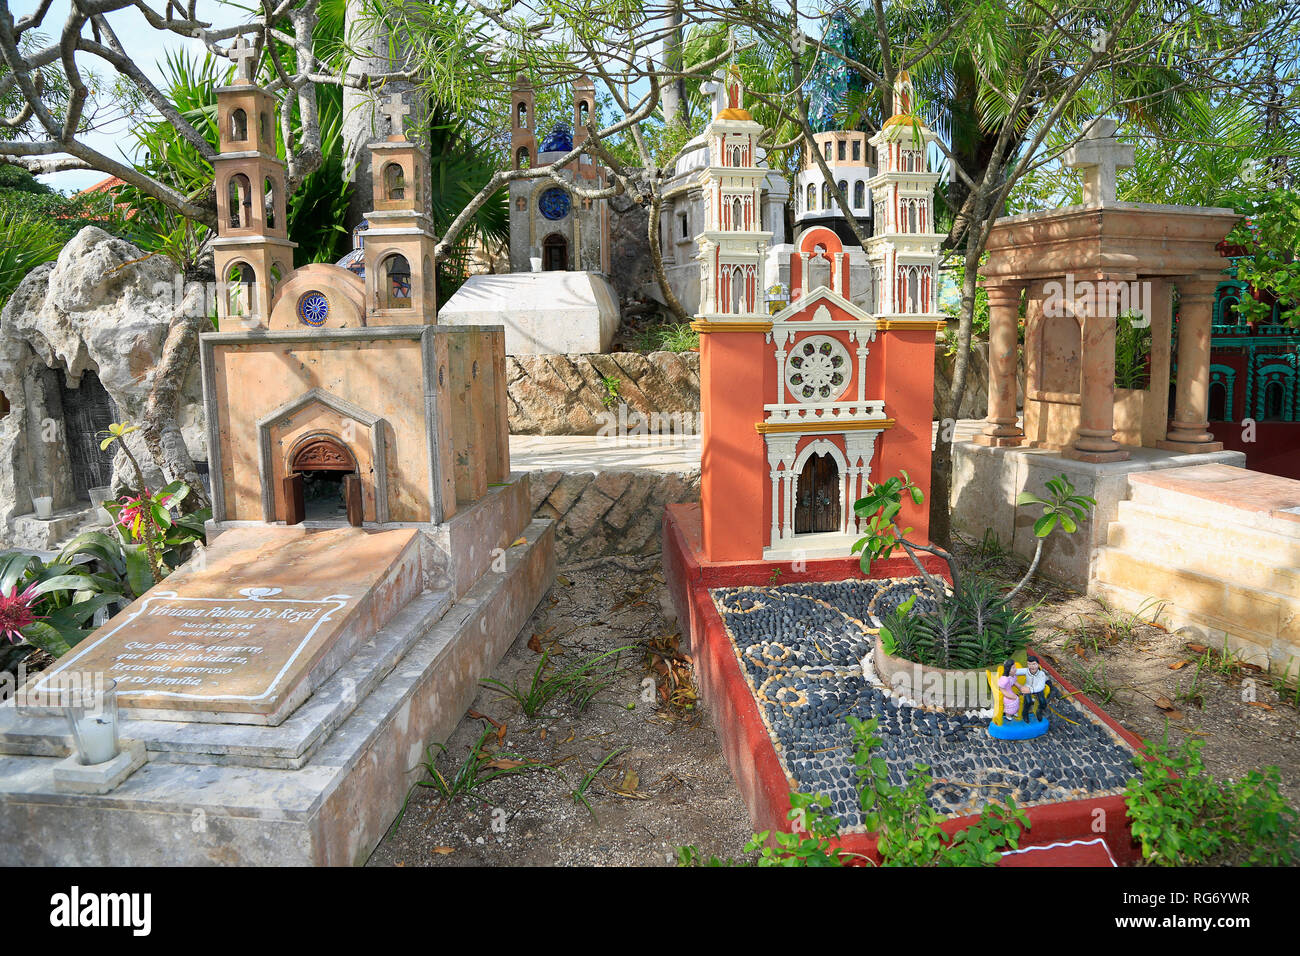 Traditionelle Friedhof Museum im Freien in der Maya Dorf, Xcaret Attraction Park. Ist ein gutes Beispiel für das Schmelzen zwischen Maya und Spanisch Einfluss Stockfoto